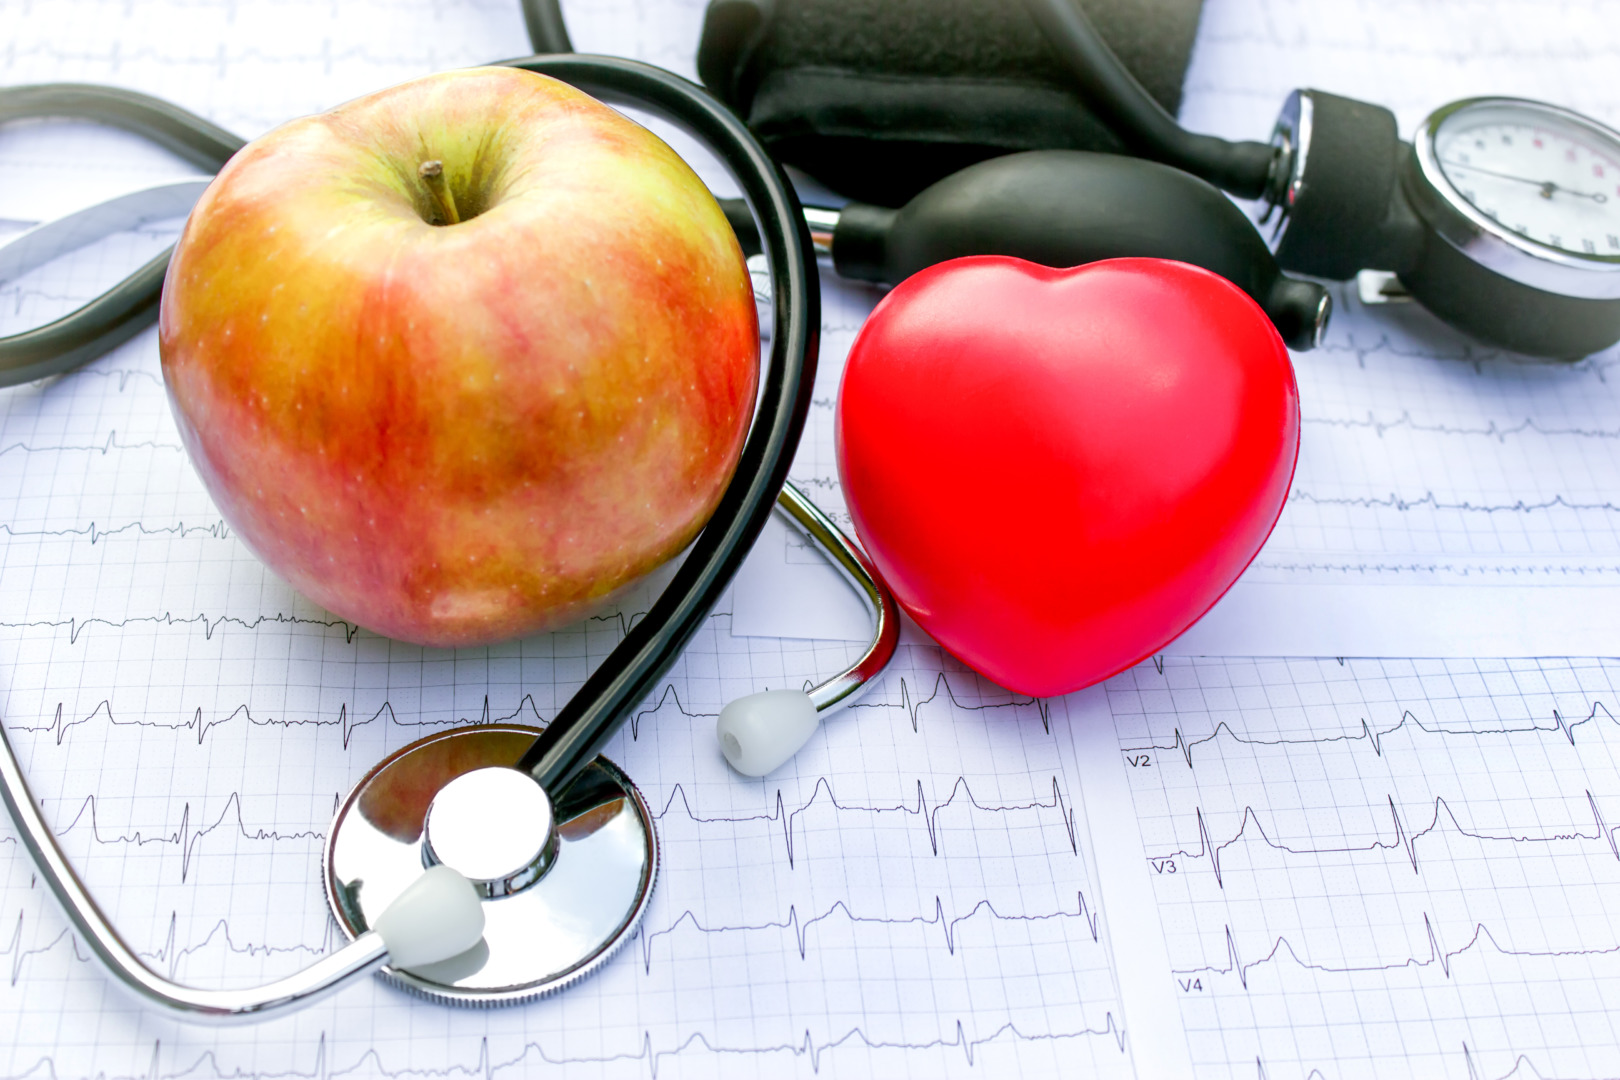 Medicina preventiva: imagem de estetoscópio e exame ECG ao lado de uma maçã, sugerindo hábitos saudáveis